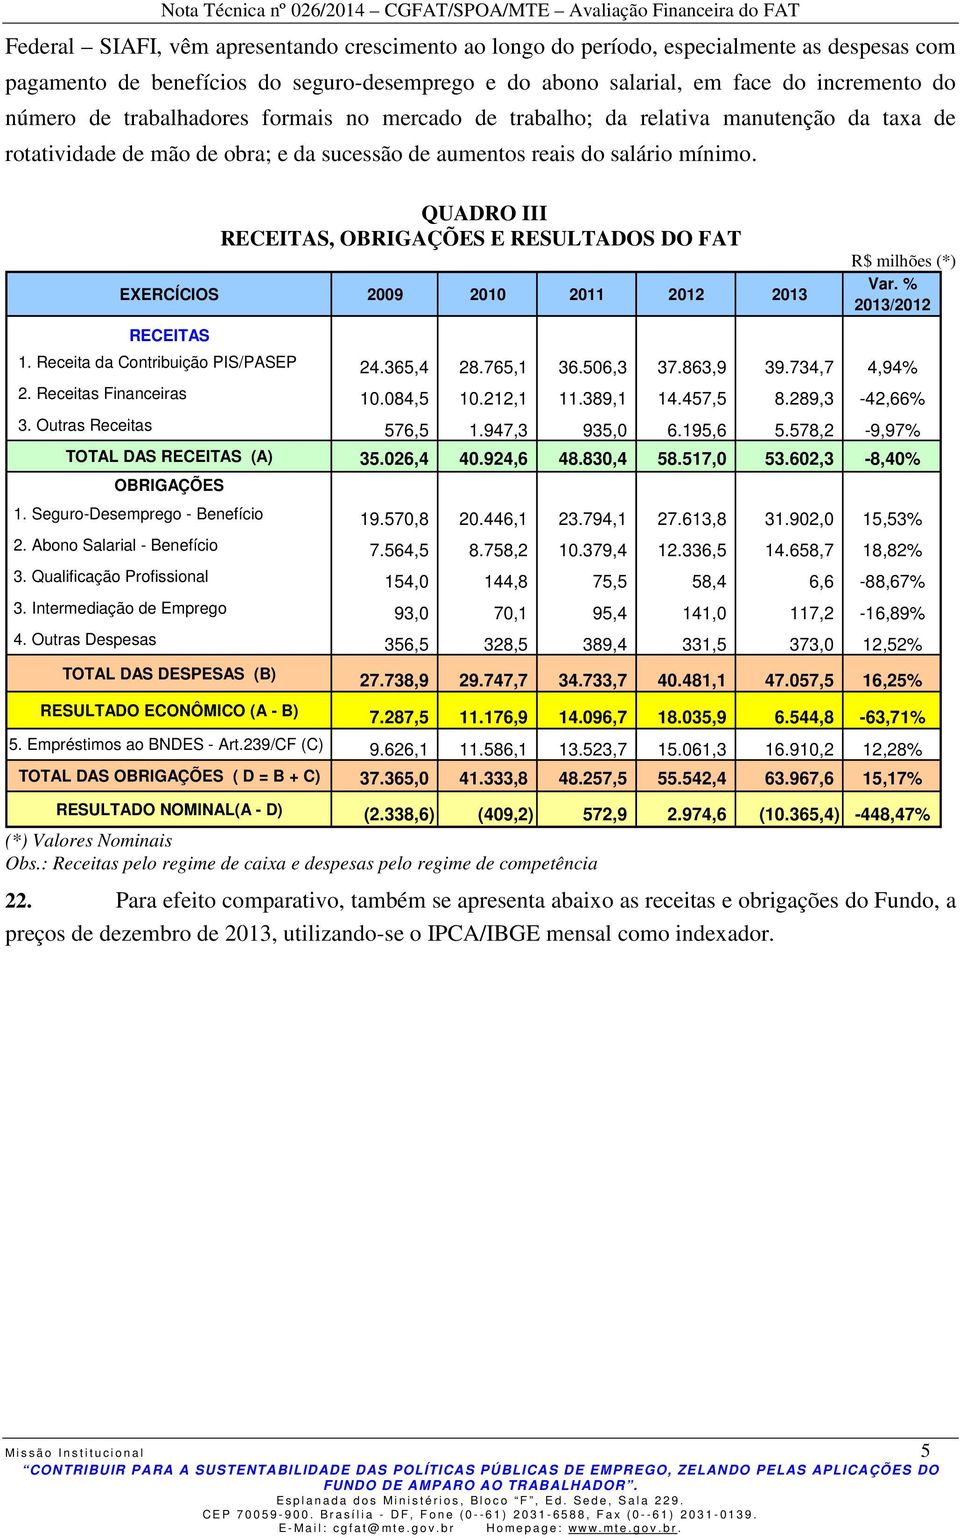 QUADRO III RECEITAS, OBRIGAÇÕES E RESULTADOS DO FAT EXERCÍCIOS 2009 2010 2011 2012 2013 RECEITAS R$ milhões (*) Var. % 2013/2012 1. Receita da Contribuição PIS/PASEP 24.365,4 28.765,1 36.506,3 37.